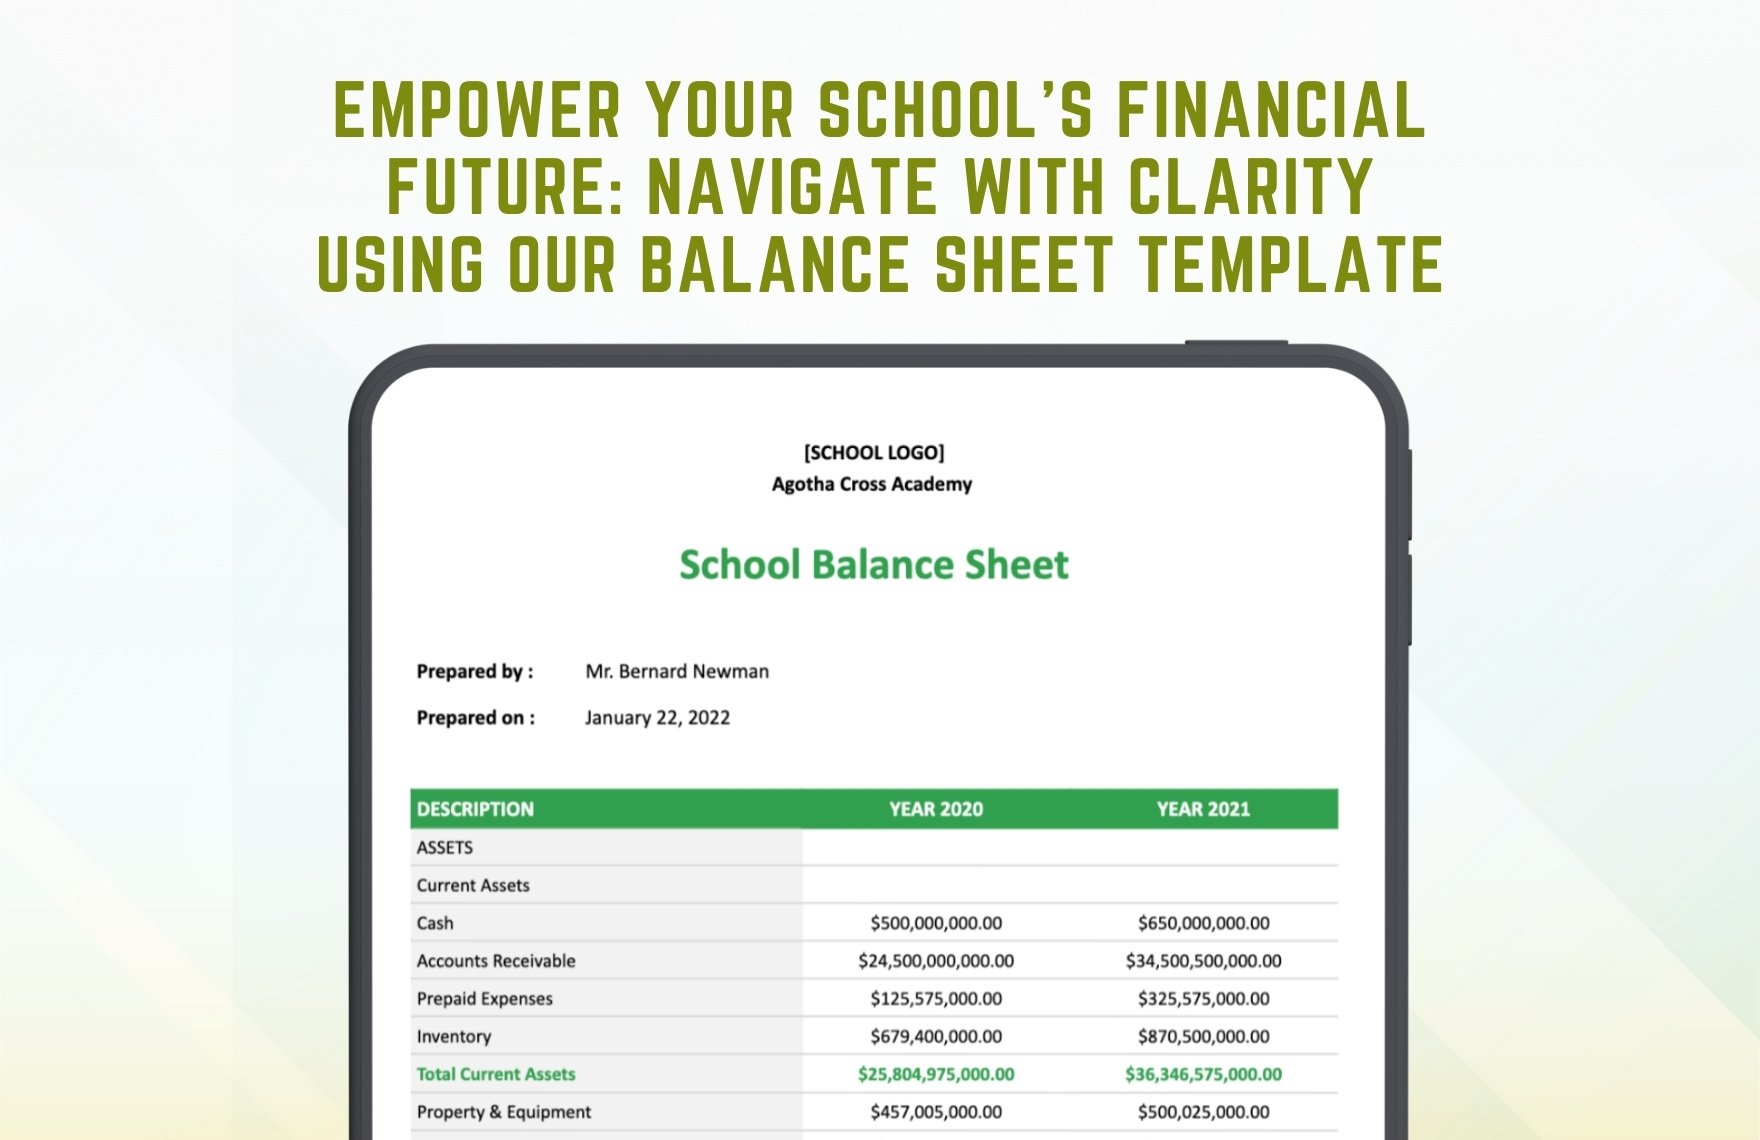 School Balance Sheet Template